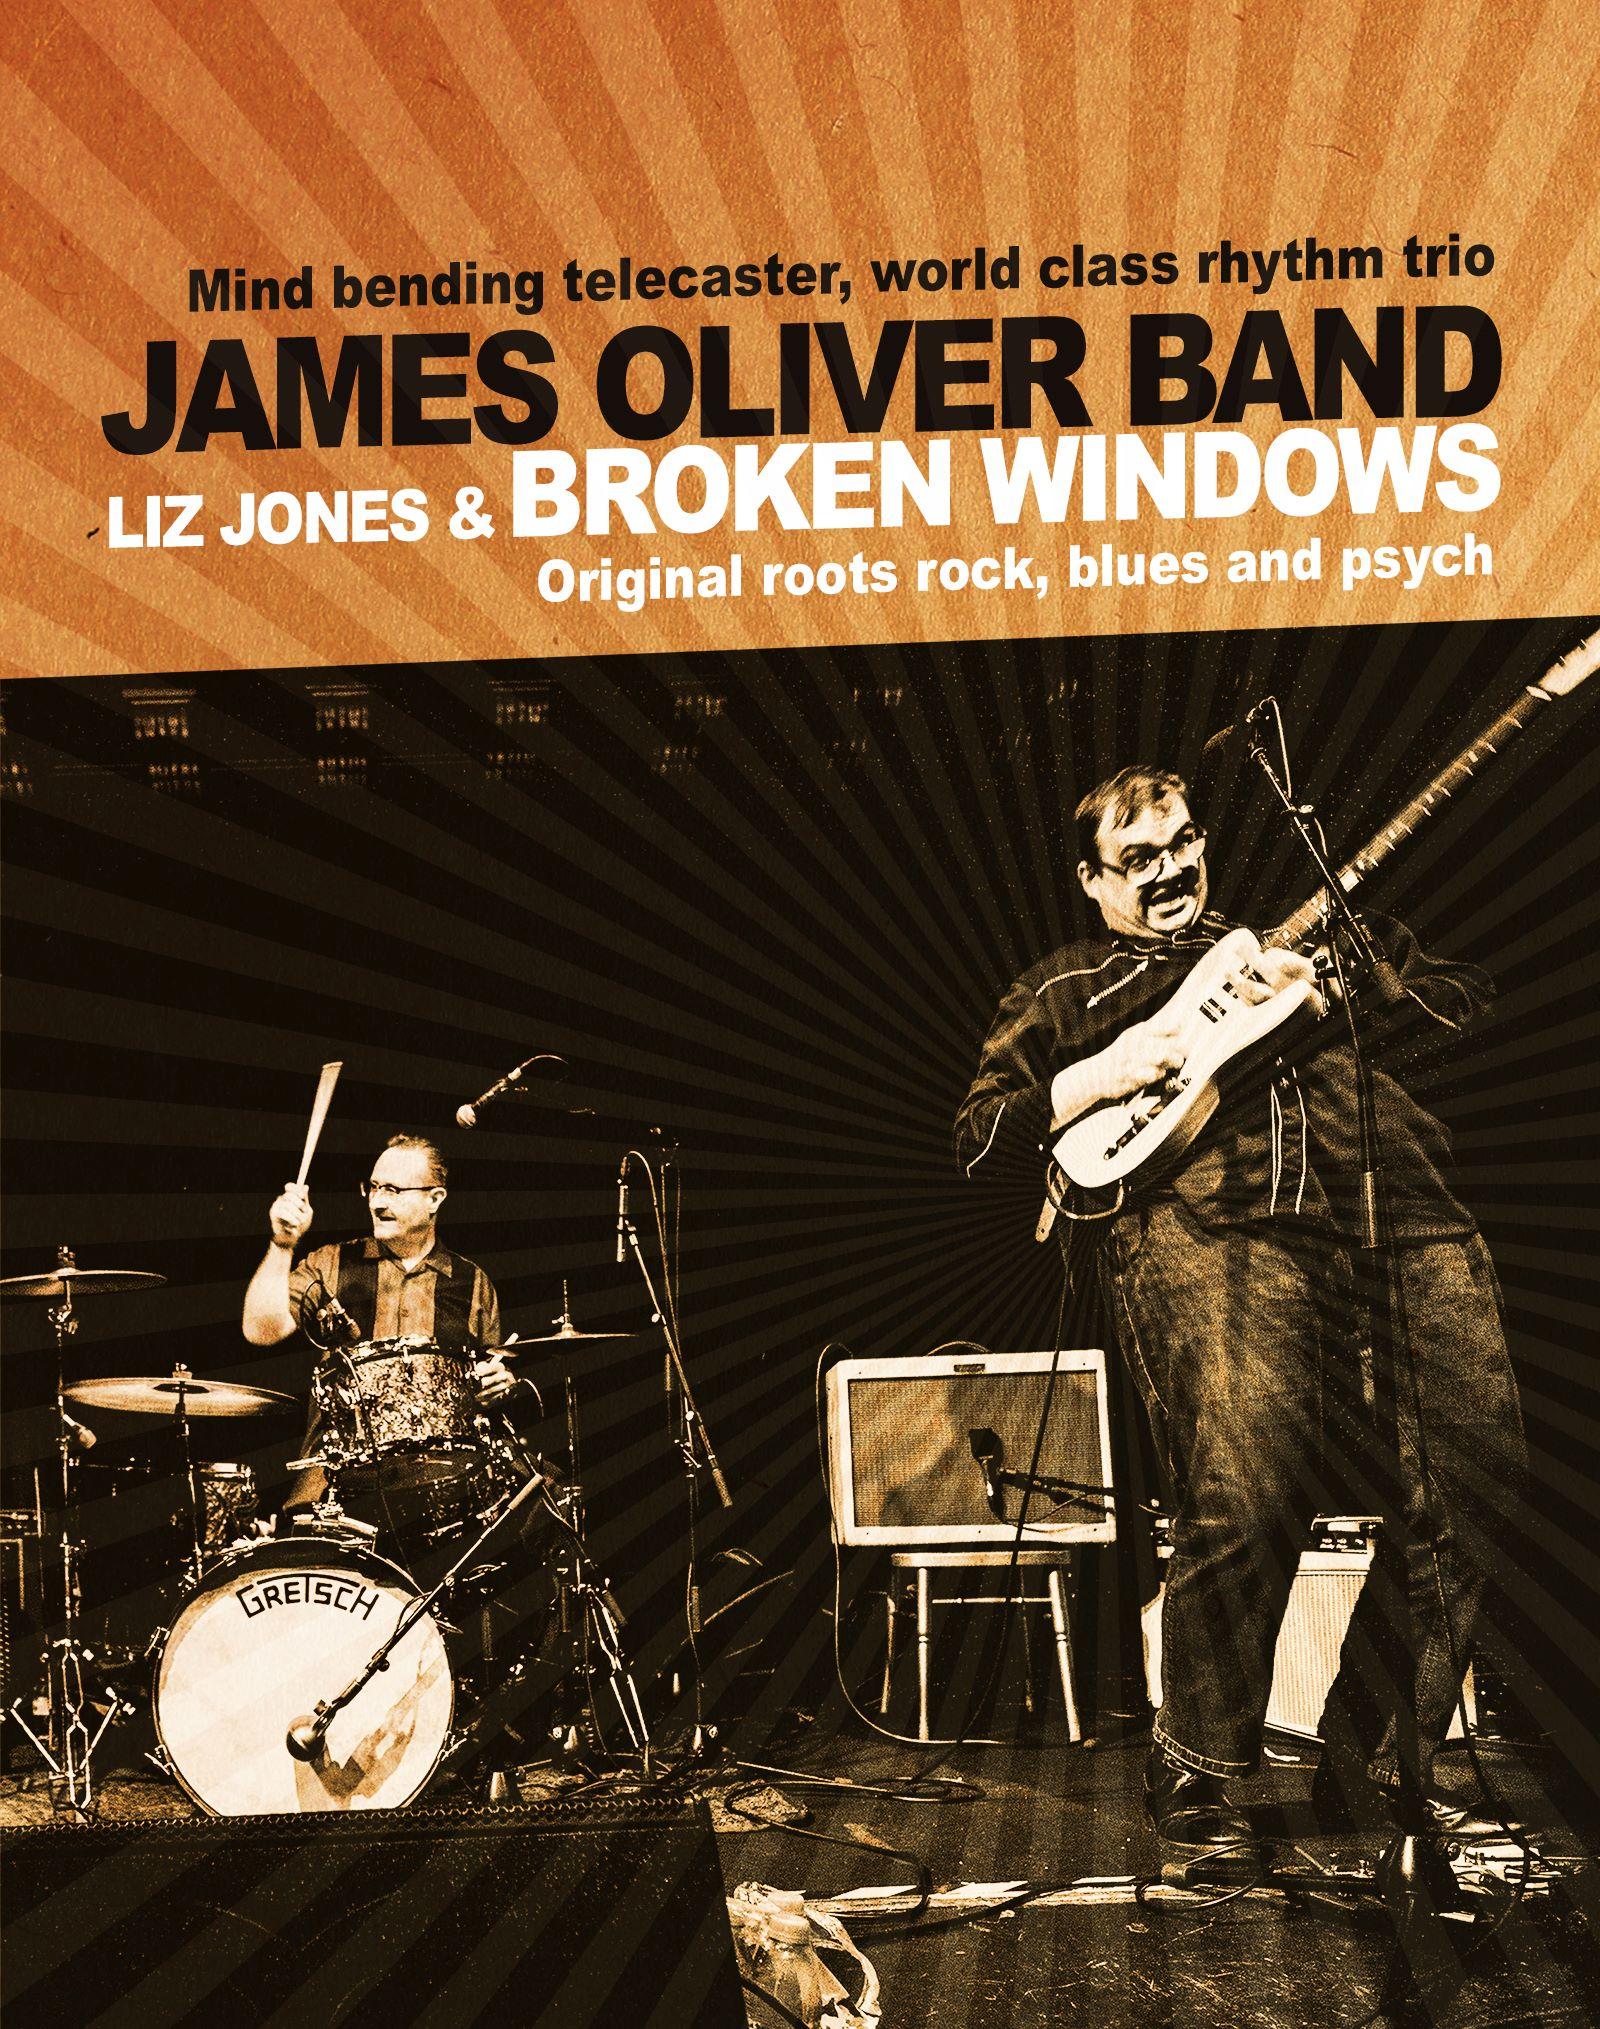 James Oliver Band